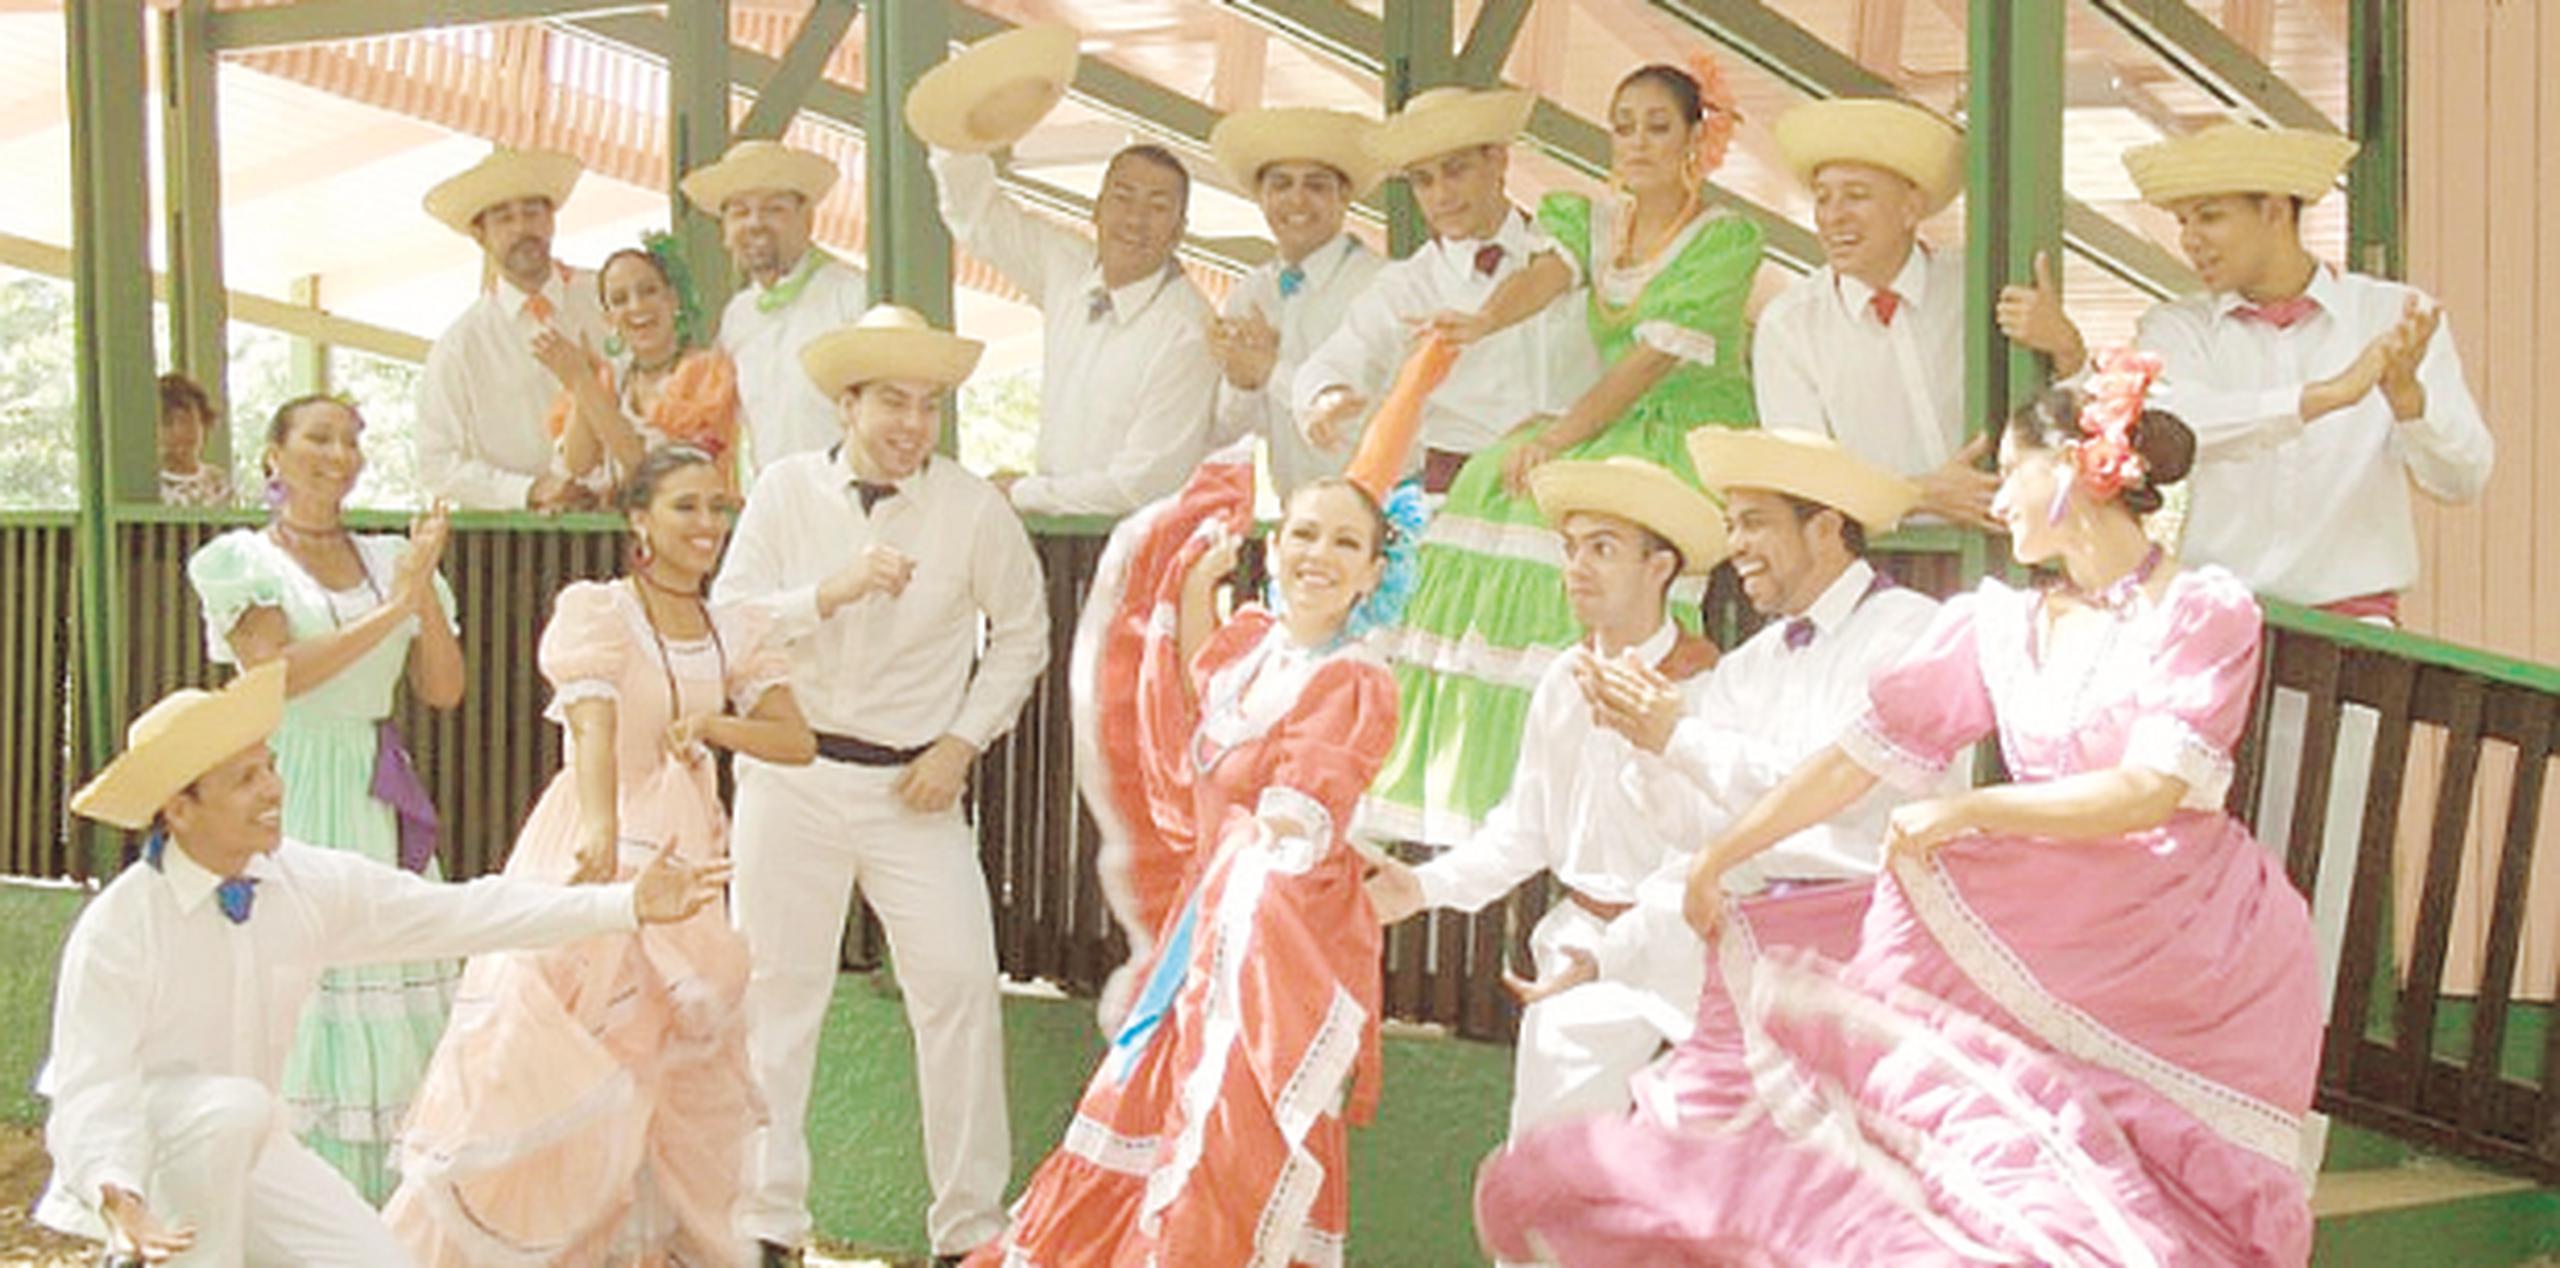 Una verdadera fiesta religiosa y cultural te espera este fin de semana en Loíza, donde celebran la Fiesta Religiosa y Cultural en Honor a San Patricio en la plaza pública. (Archivo)